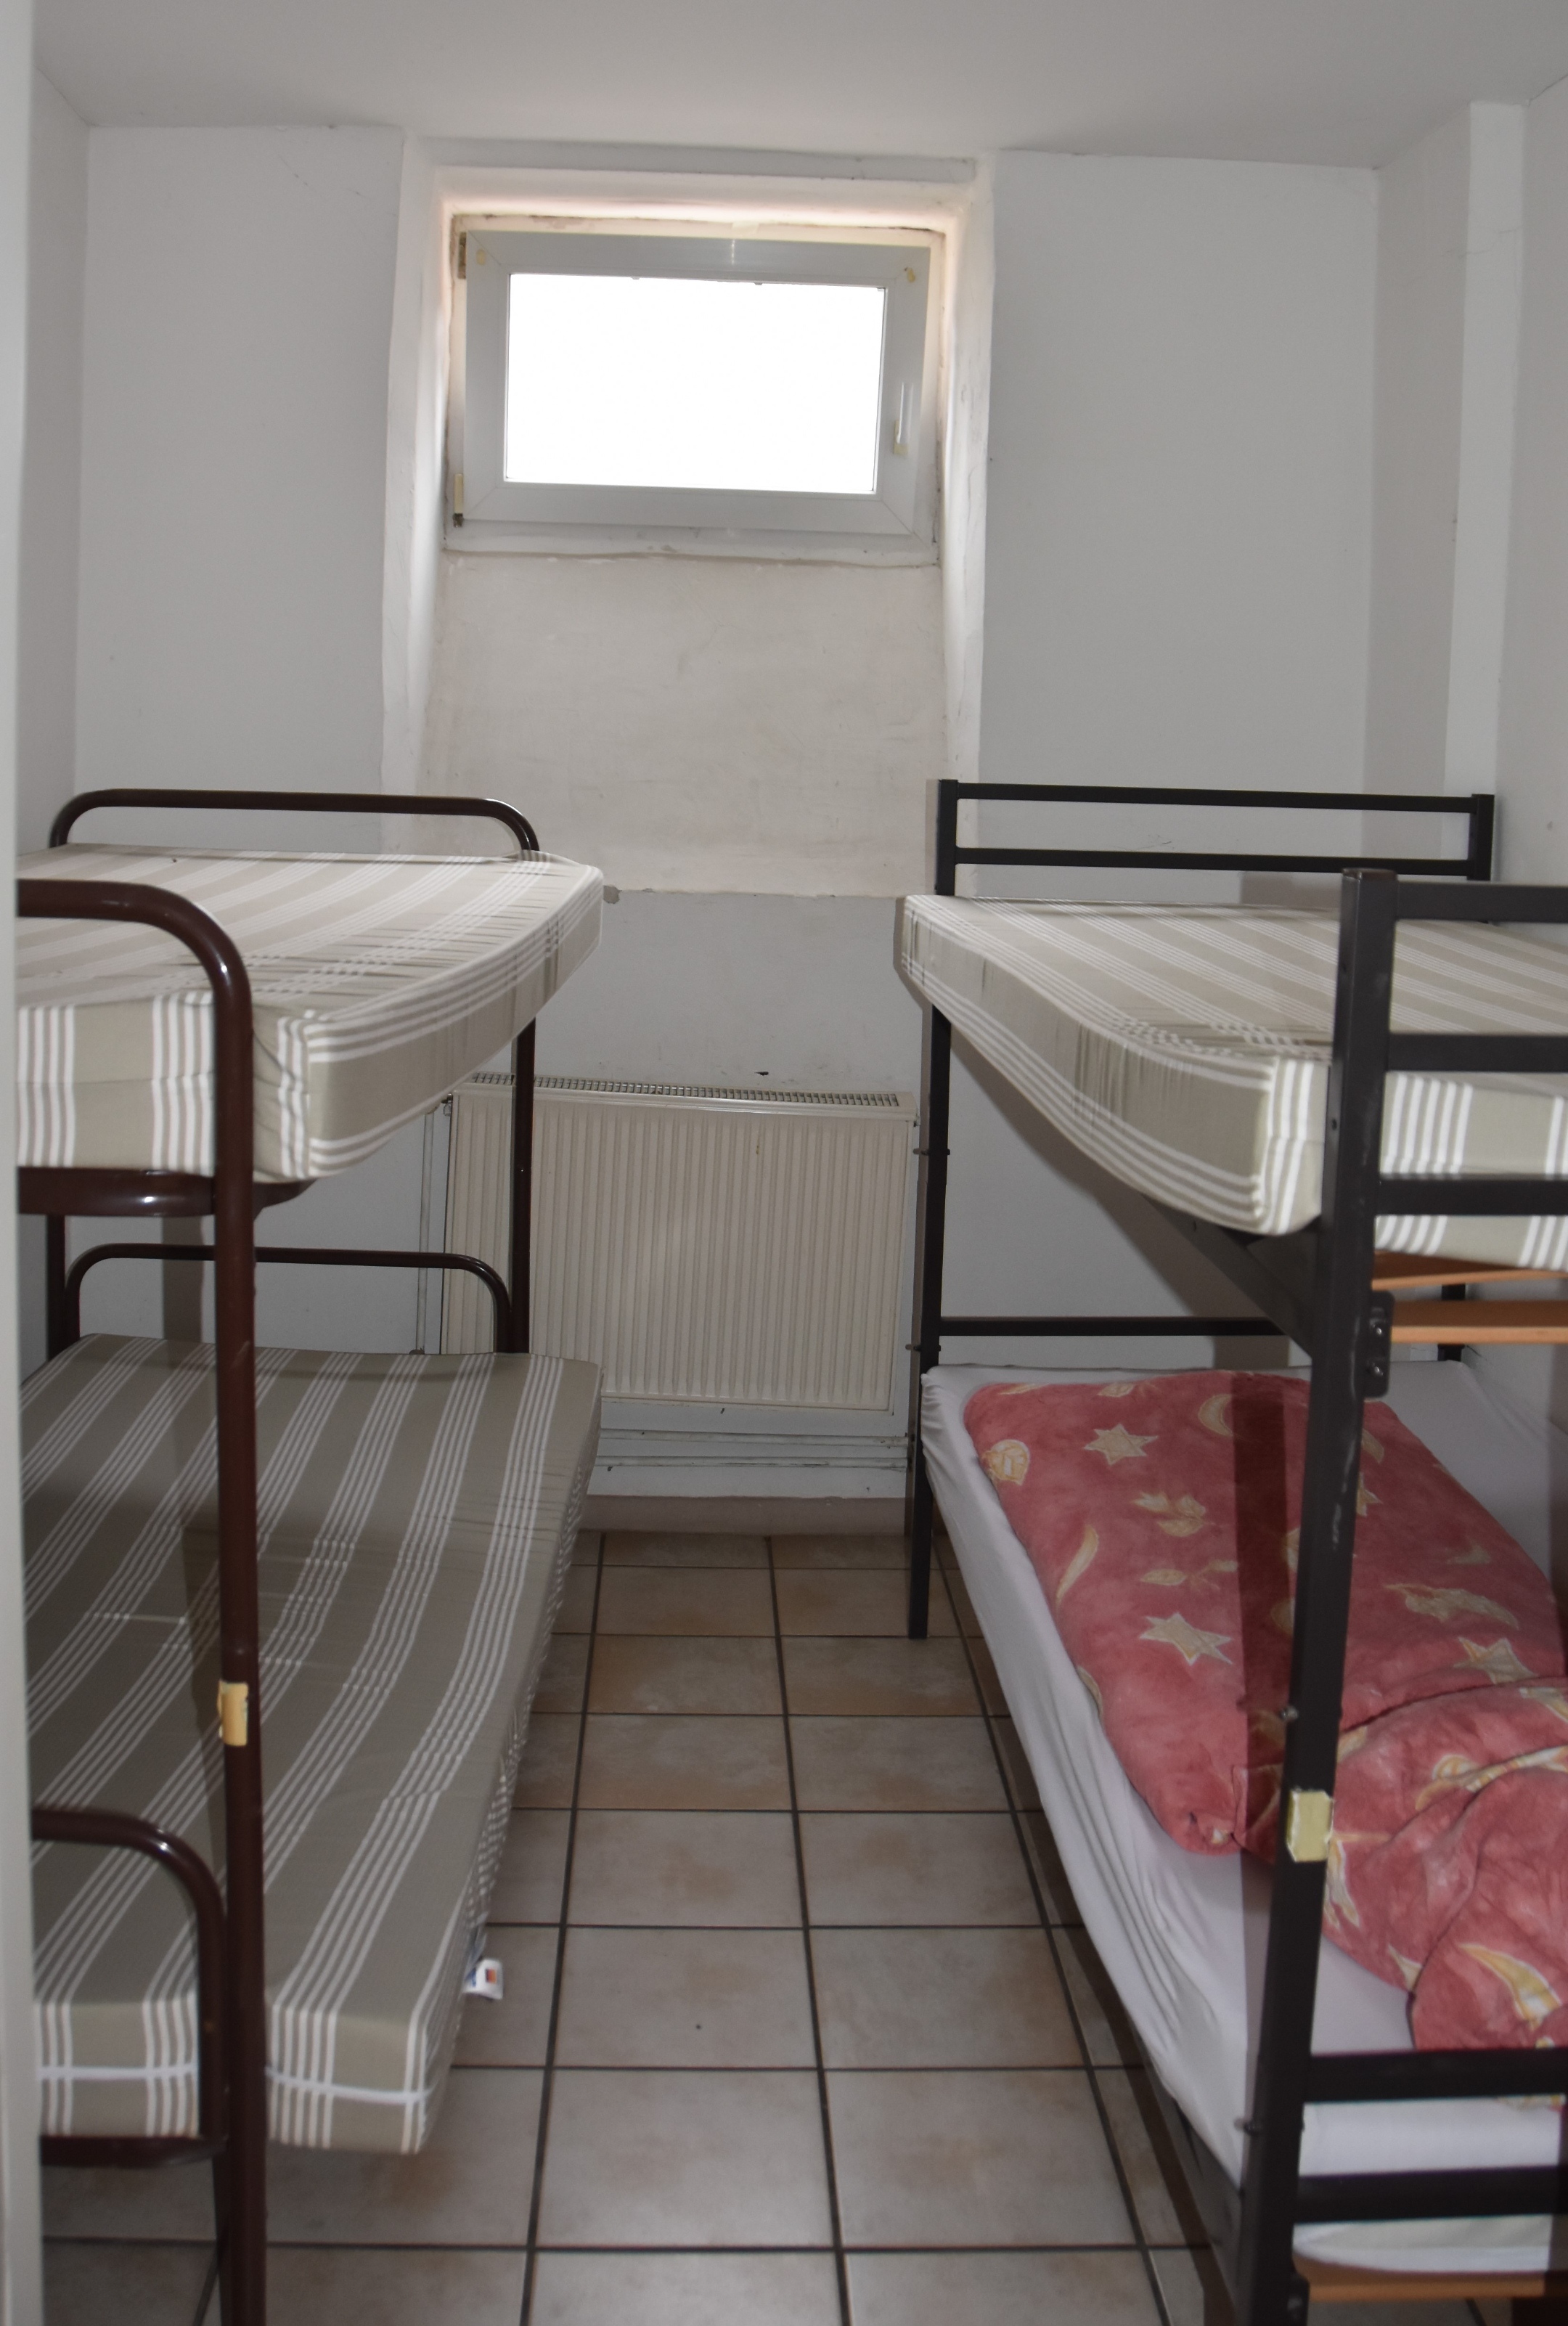 Das Schlafzimmer im Männerbereich der Notschlafstelle war früher eine Arrestzelle der Polizei. Foto: uk